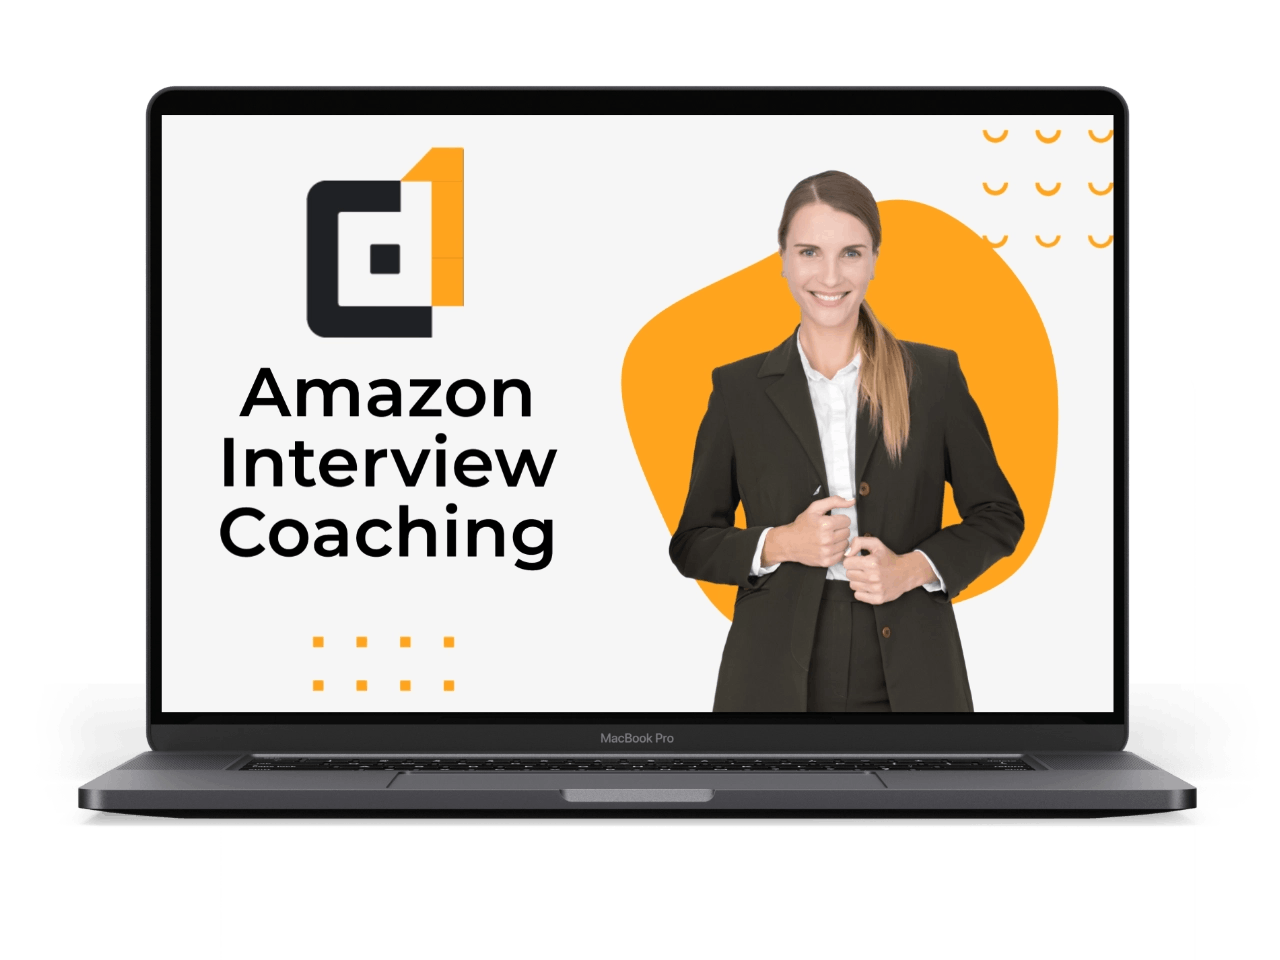 Hãy khám phá cách huấn luyện Amazon Interview Coaching giúp bạn sẵn sàng cho các buổi phỏng vấn tuyển dụng. Từ việc chuẩn bị câu trả lời và tìm hiểu về văn hoá doanh nghiệp, hãy trở thành ứng viên tài năng nhất với khả năng tự tin và chuyên nghiệp.